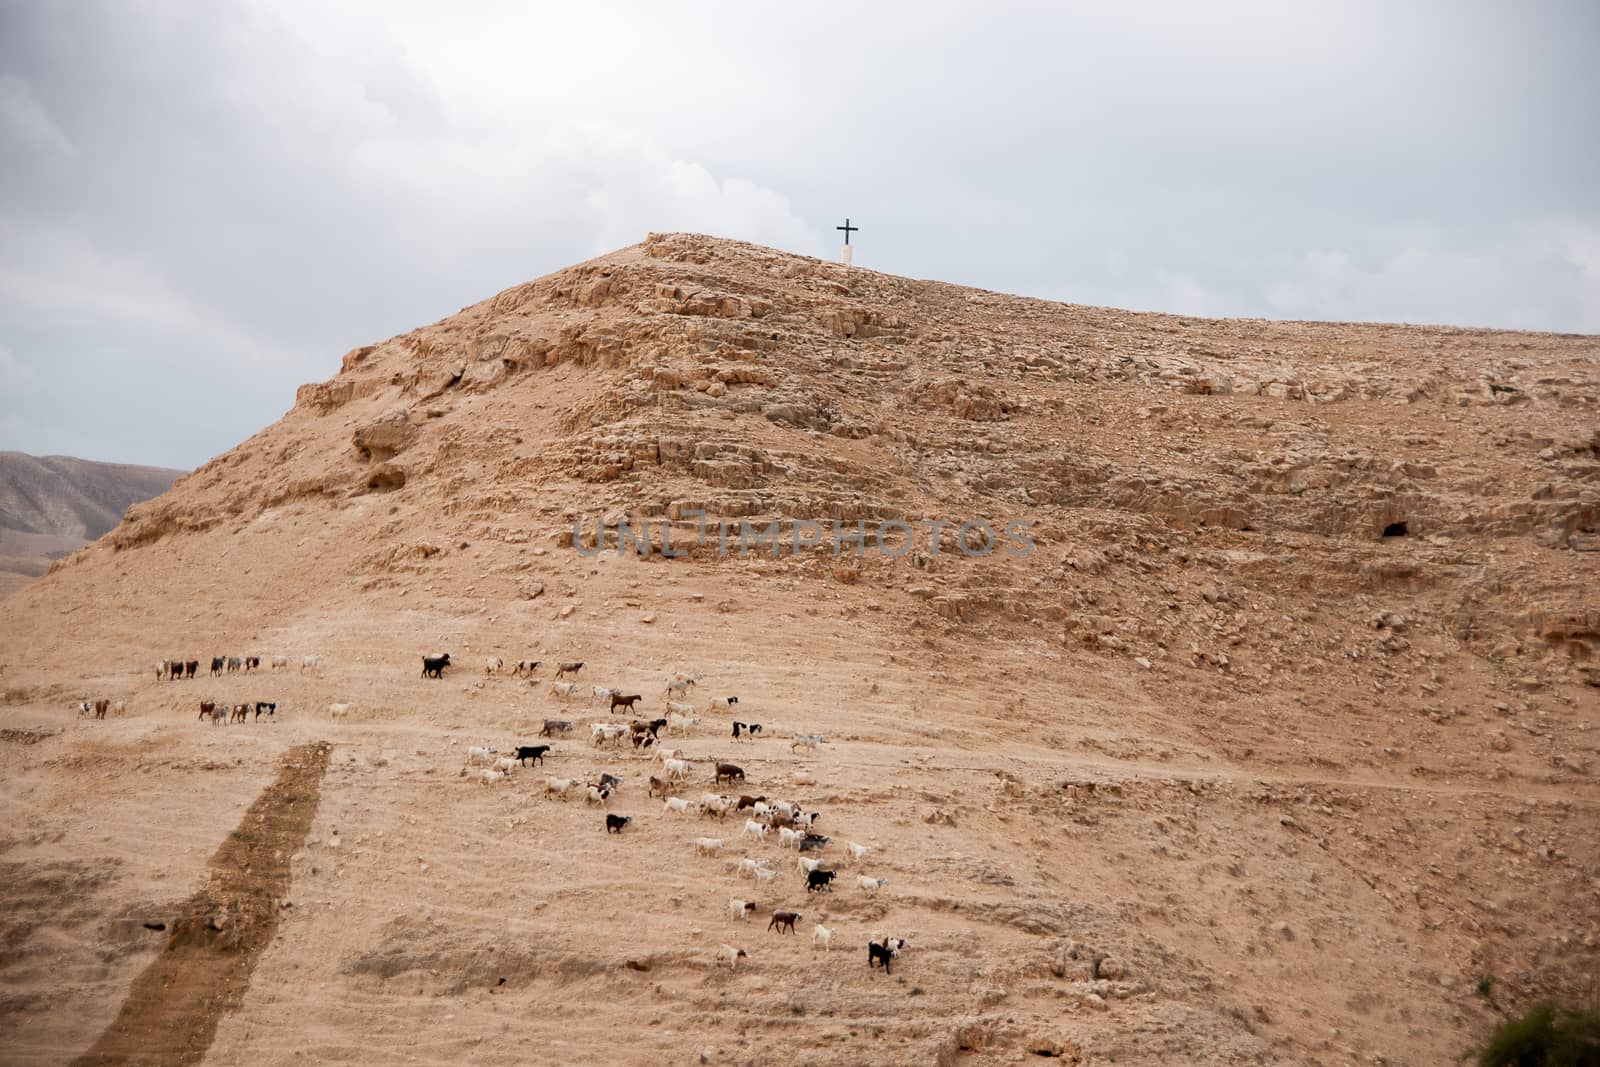 Cross in judean desert by javax